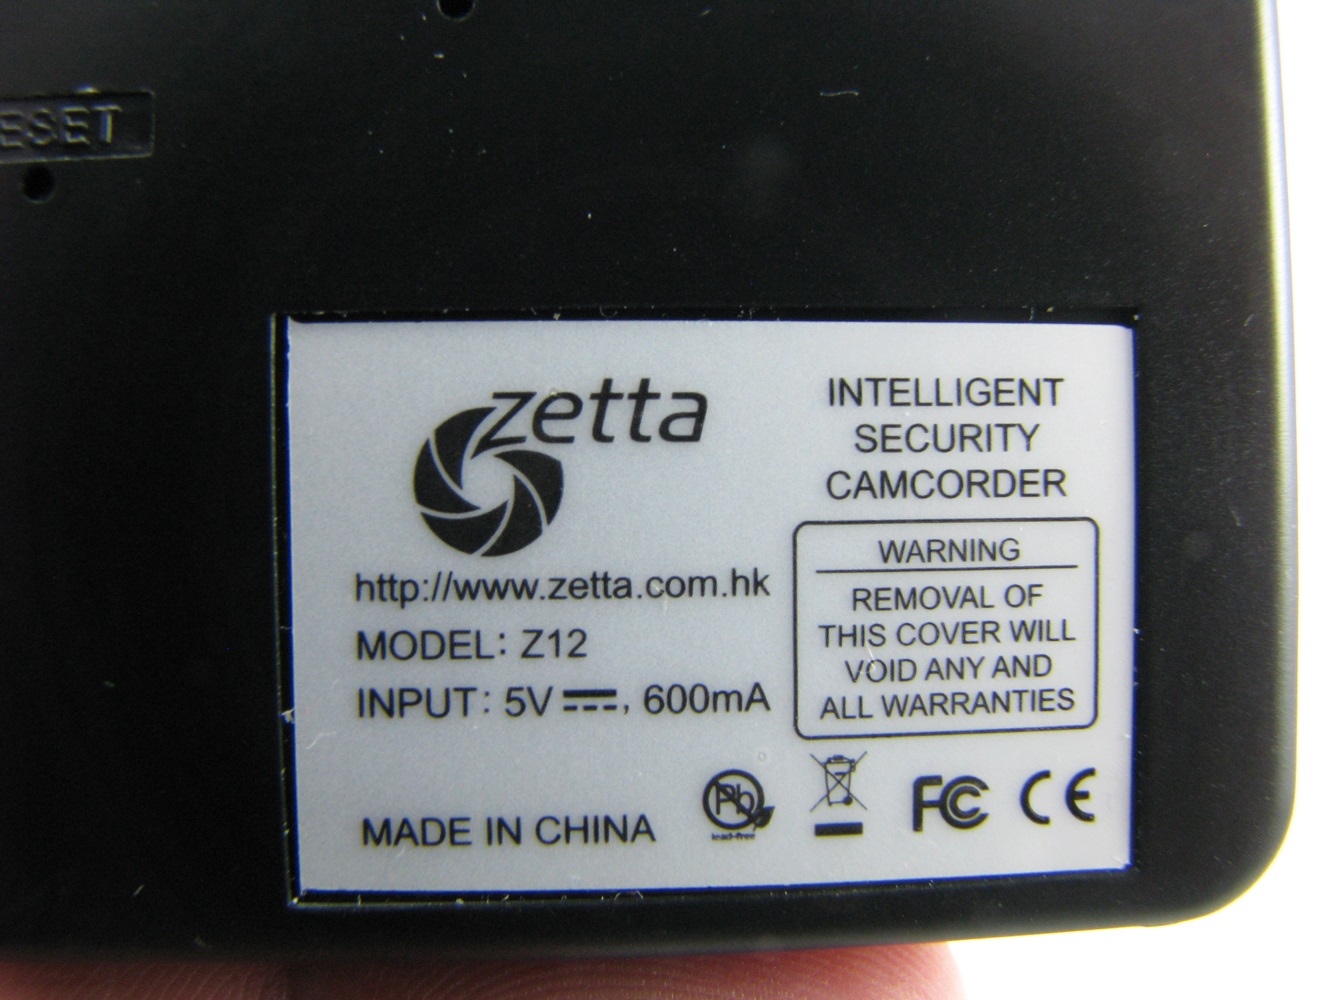  Zetta Z12 Spy Camera Review